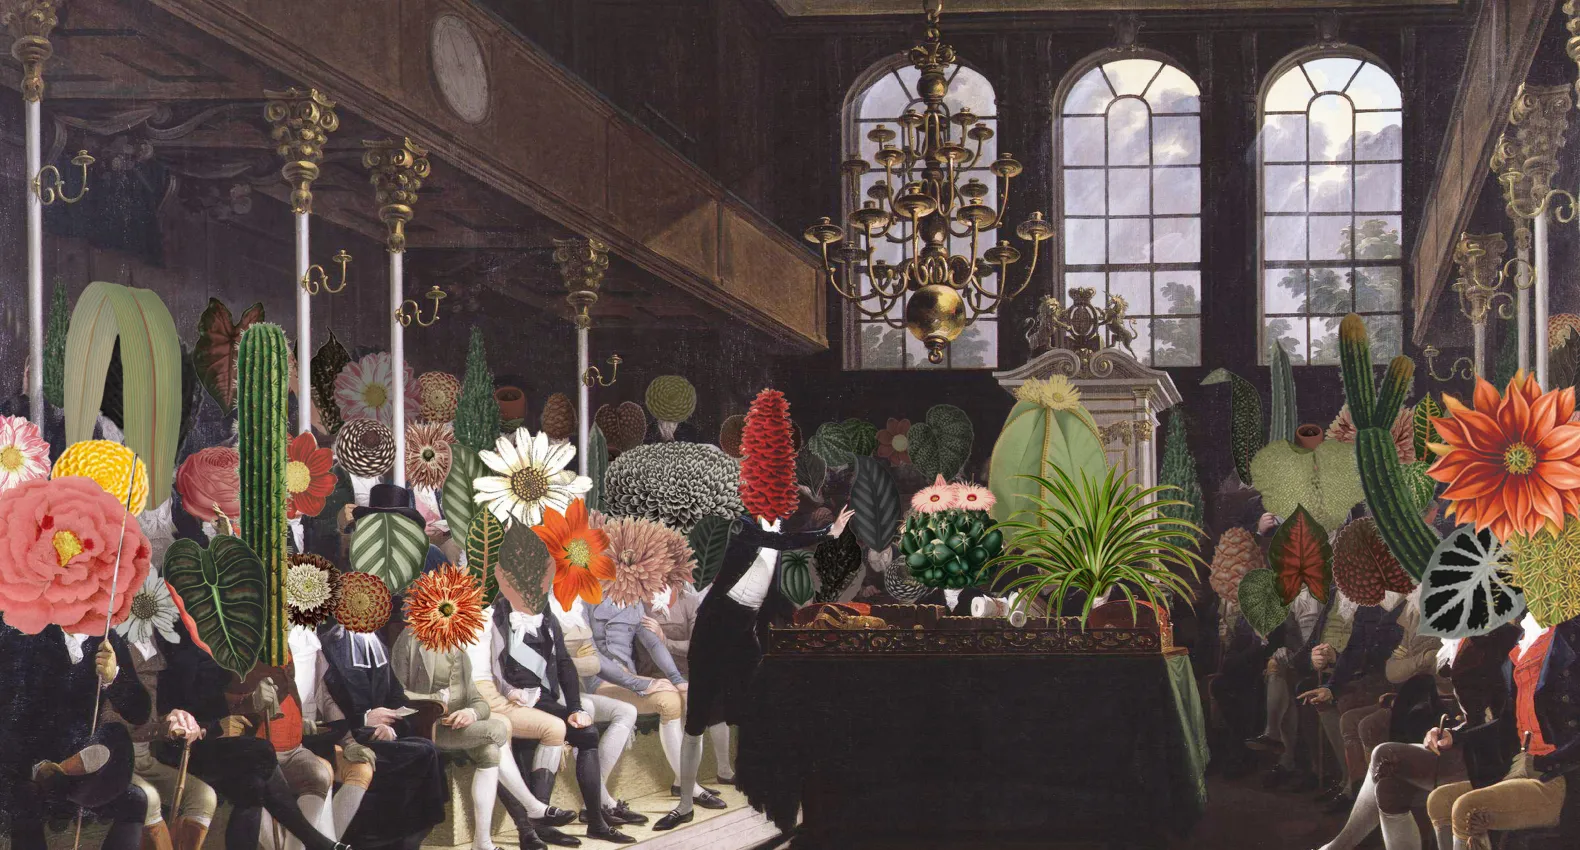 Studio Celine Baumann. Parliament of Plants